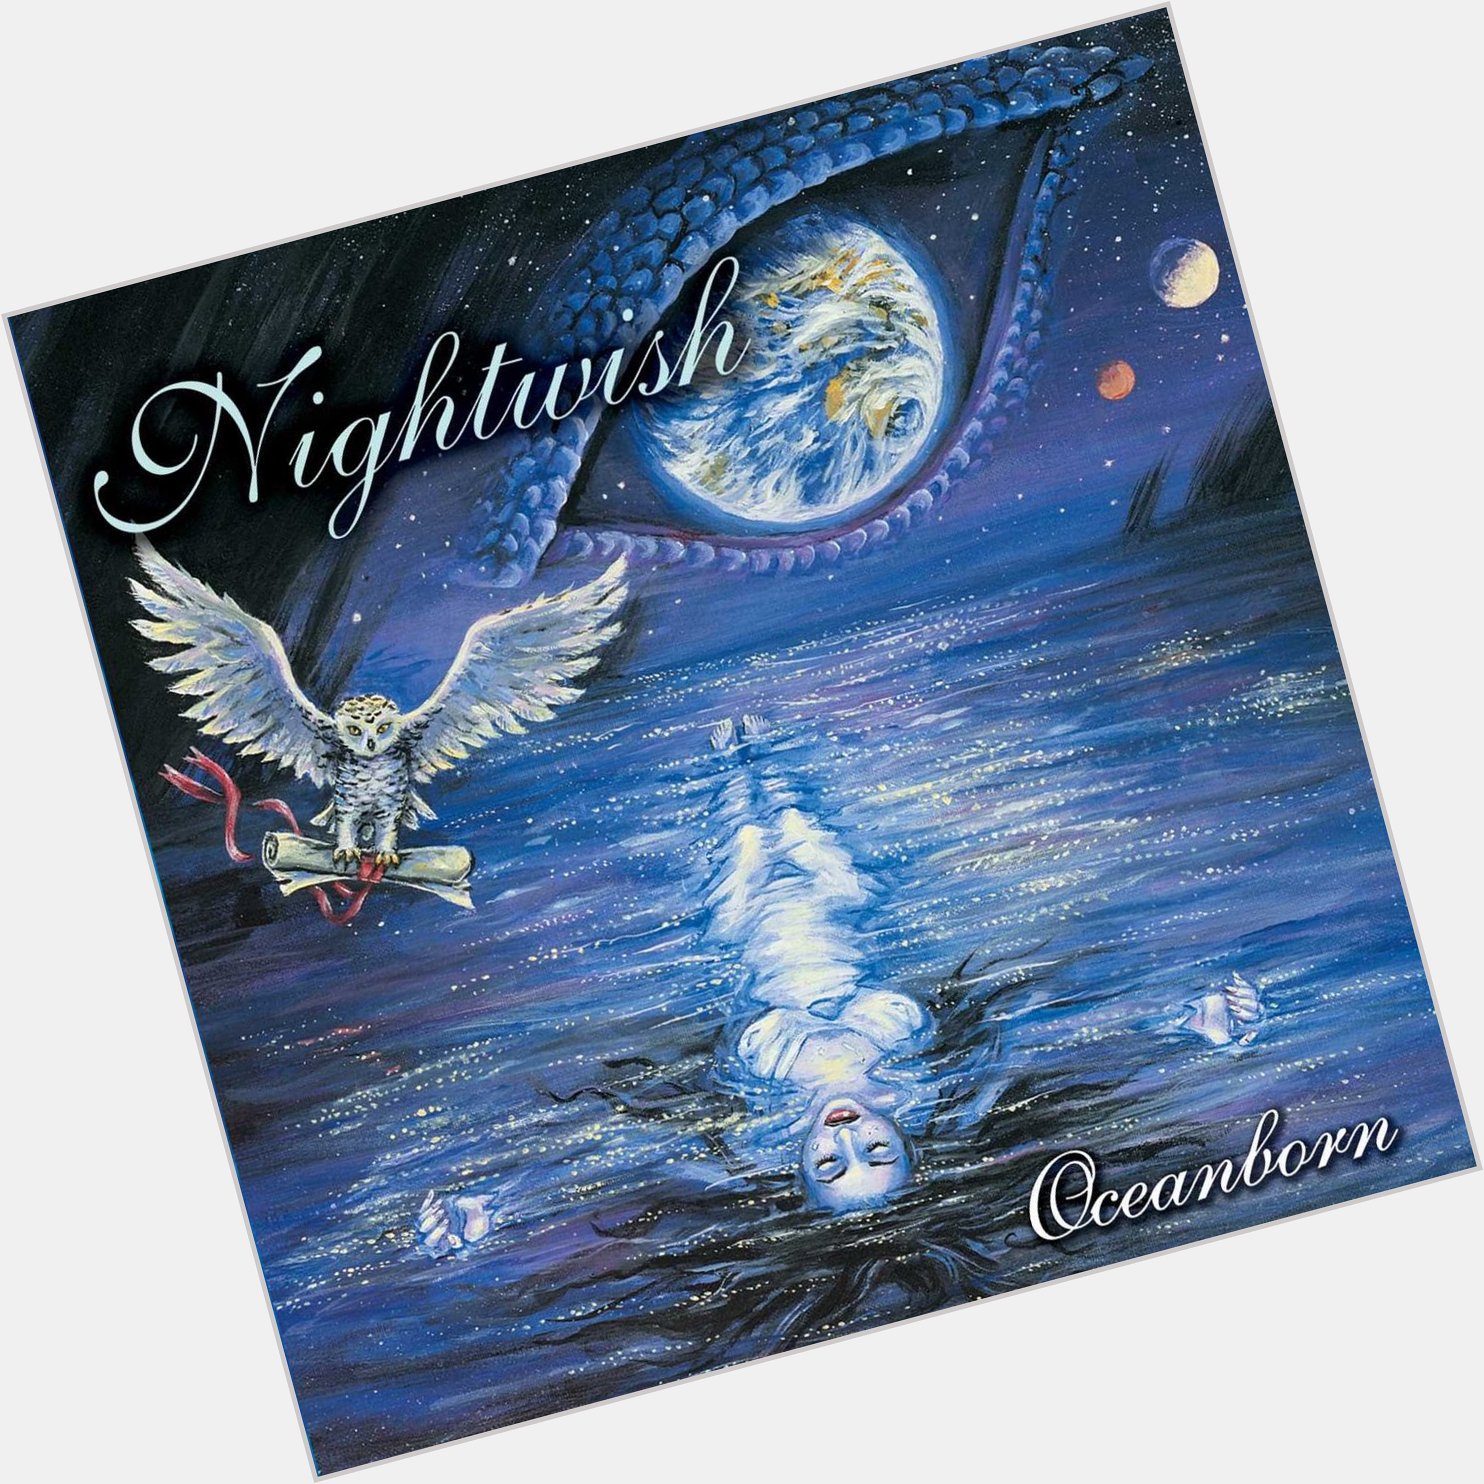  Stargazers
from Oceanborn
by Nightwish

Happy Birthday, Jukka Nevalainen Nightwish           